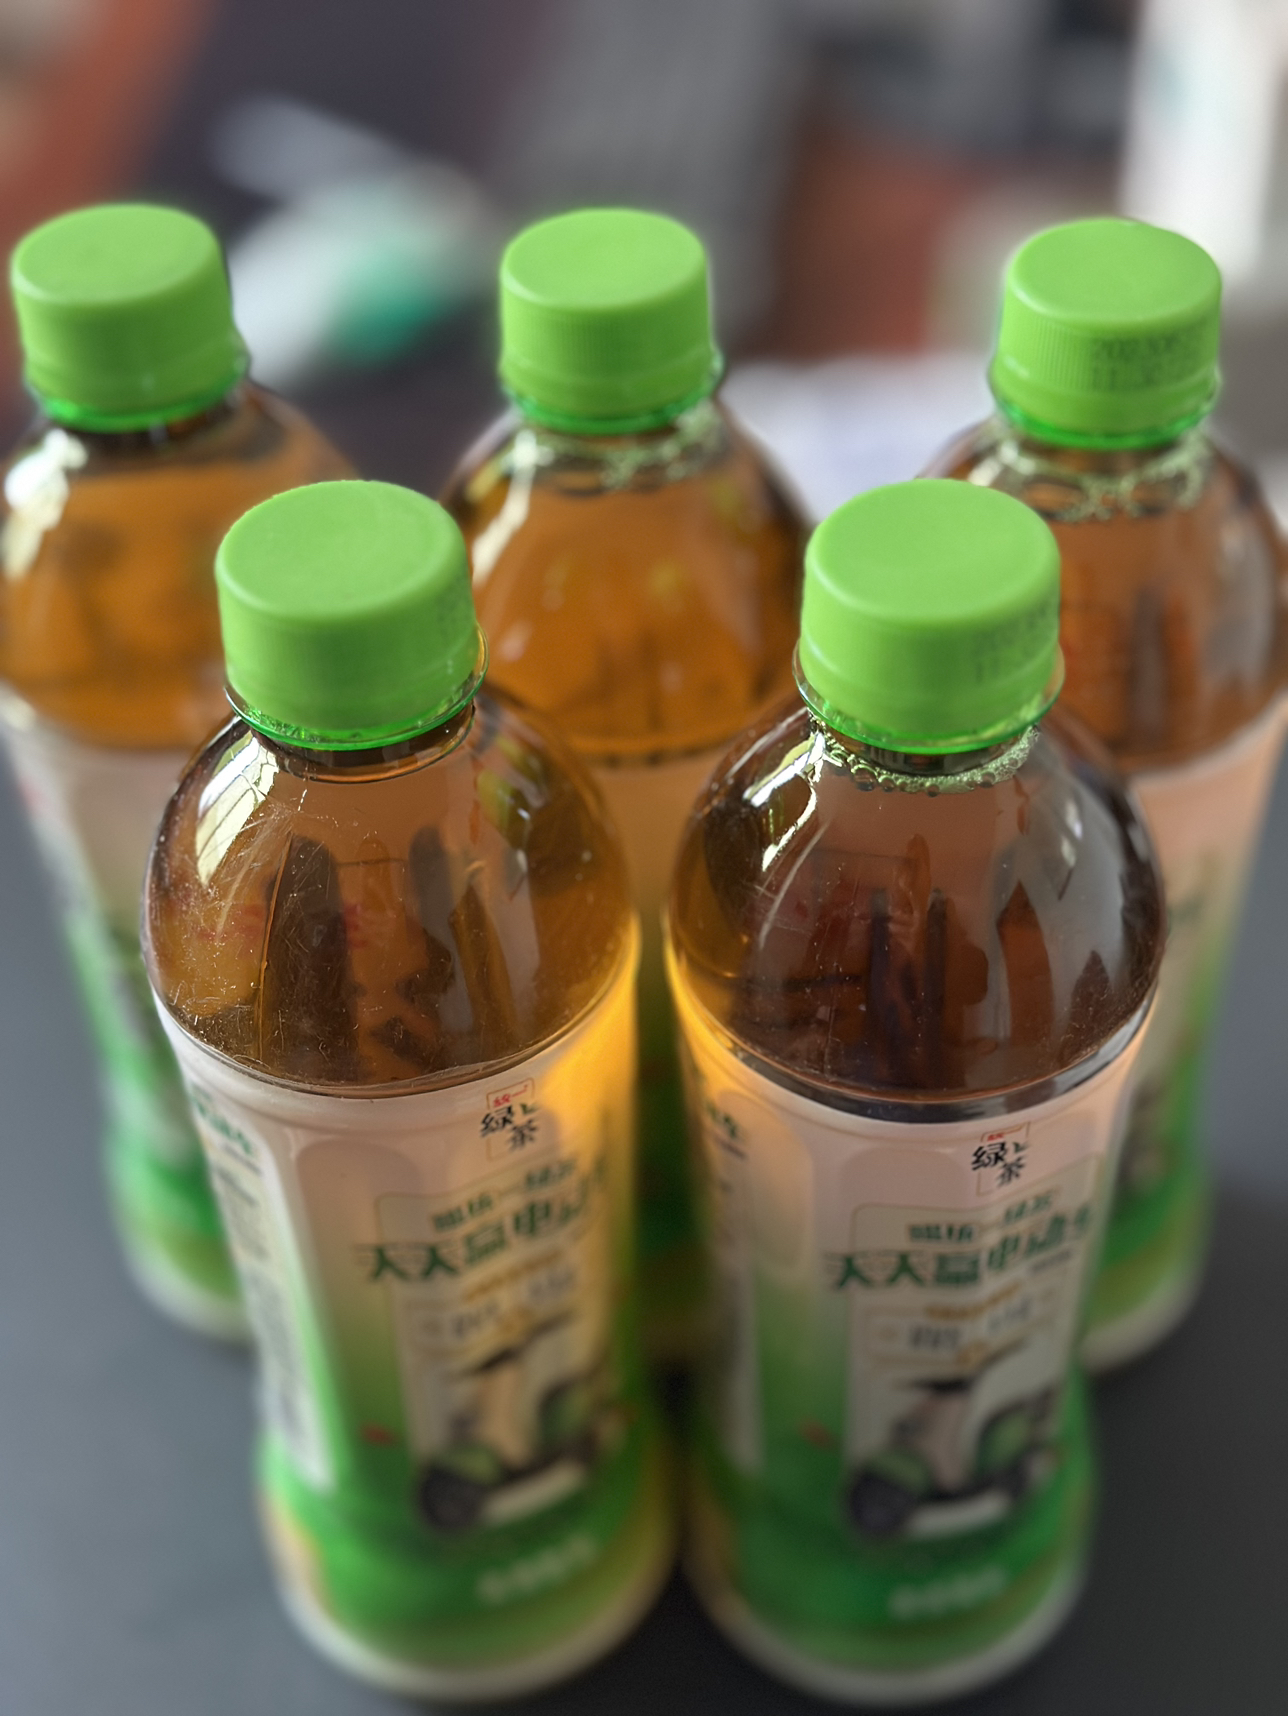 统一 绿茶 500ml*5瓶装 新旧包装交替发货晒单图